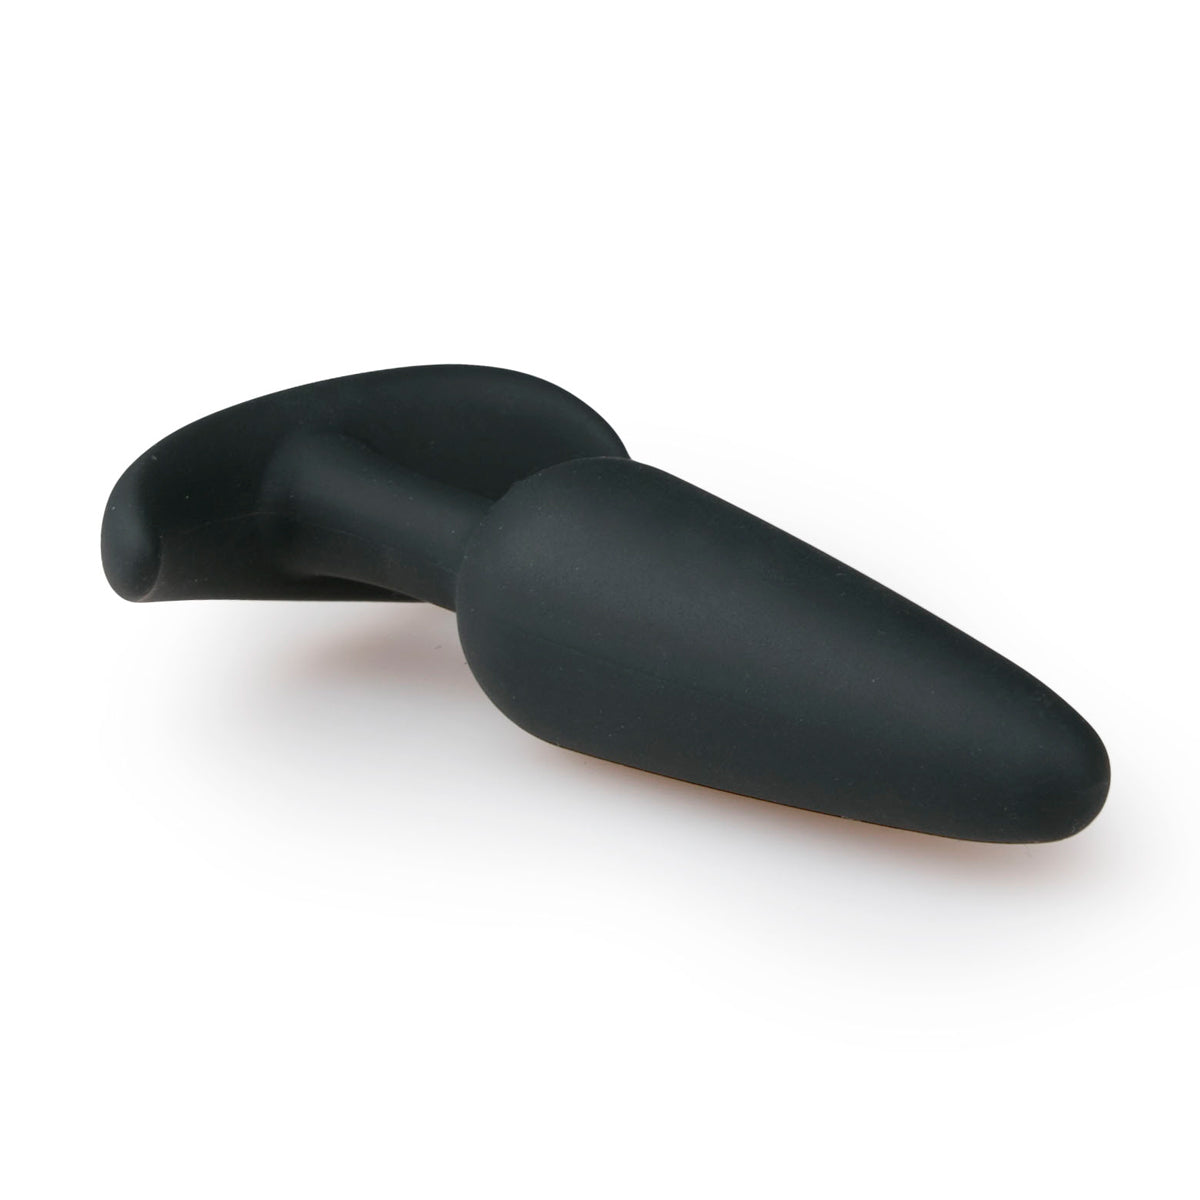 Zwarte Butt Plug met Handvat. De butt plug is 10 cm lang, van het merk EasyToys Anal Collection en te koop bij Flavourez.